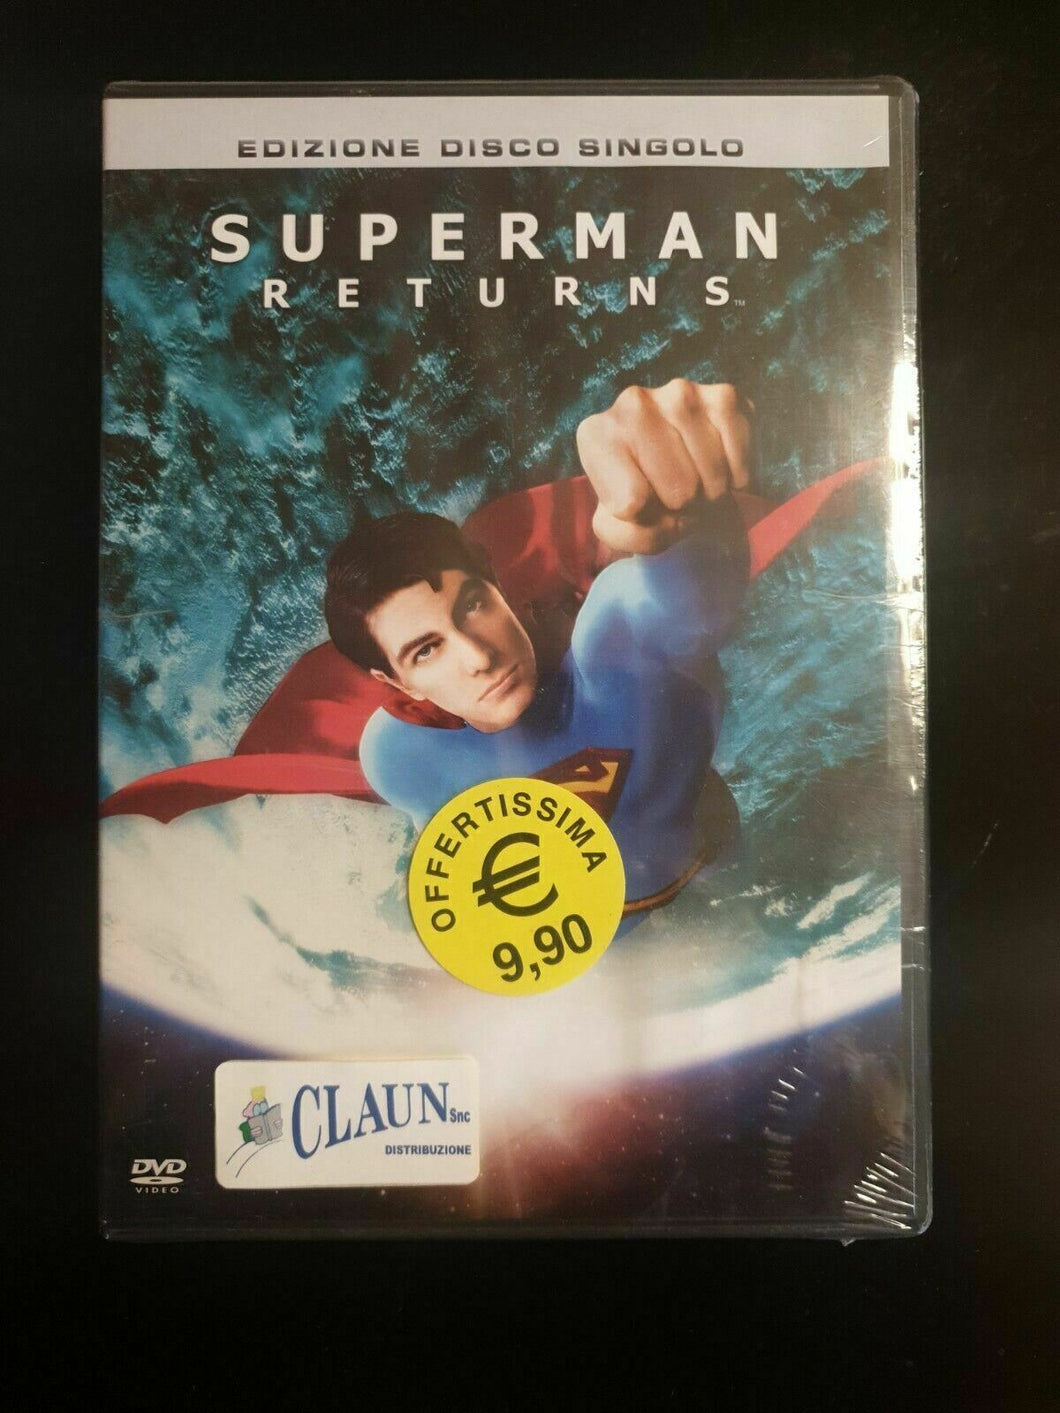 Superman Returns (2006) Edizione Disco Singolo  DVD Nuovo